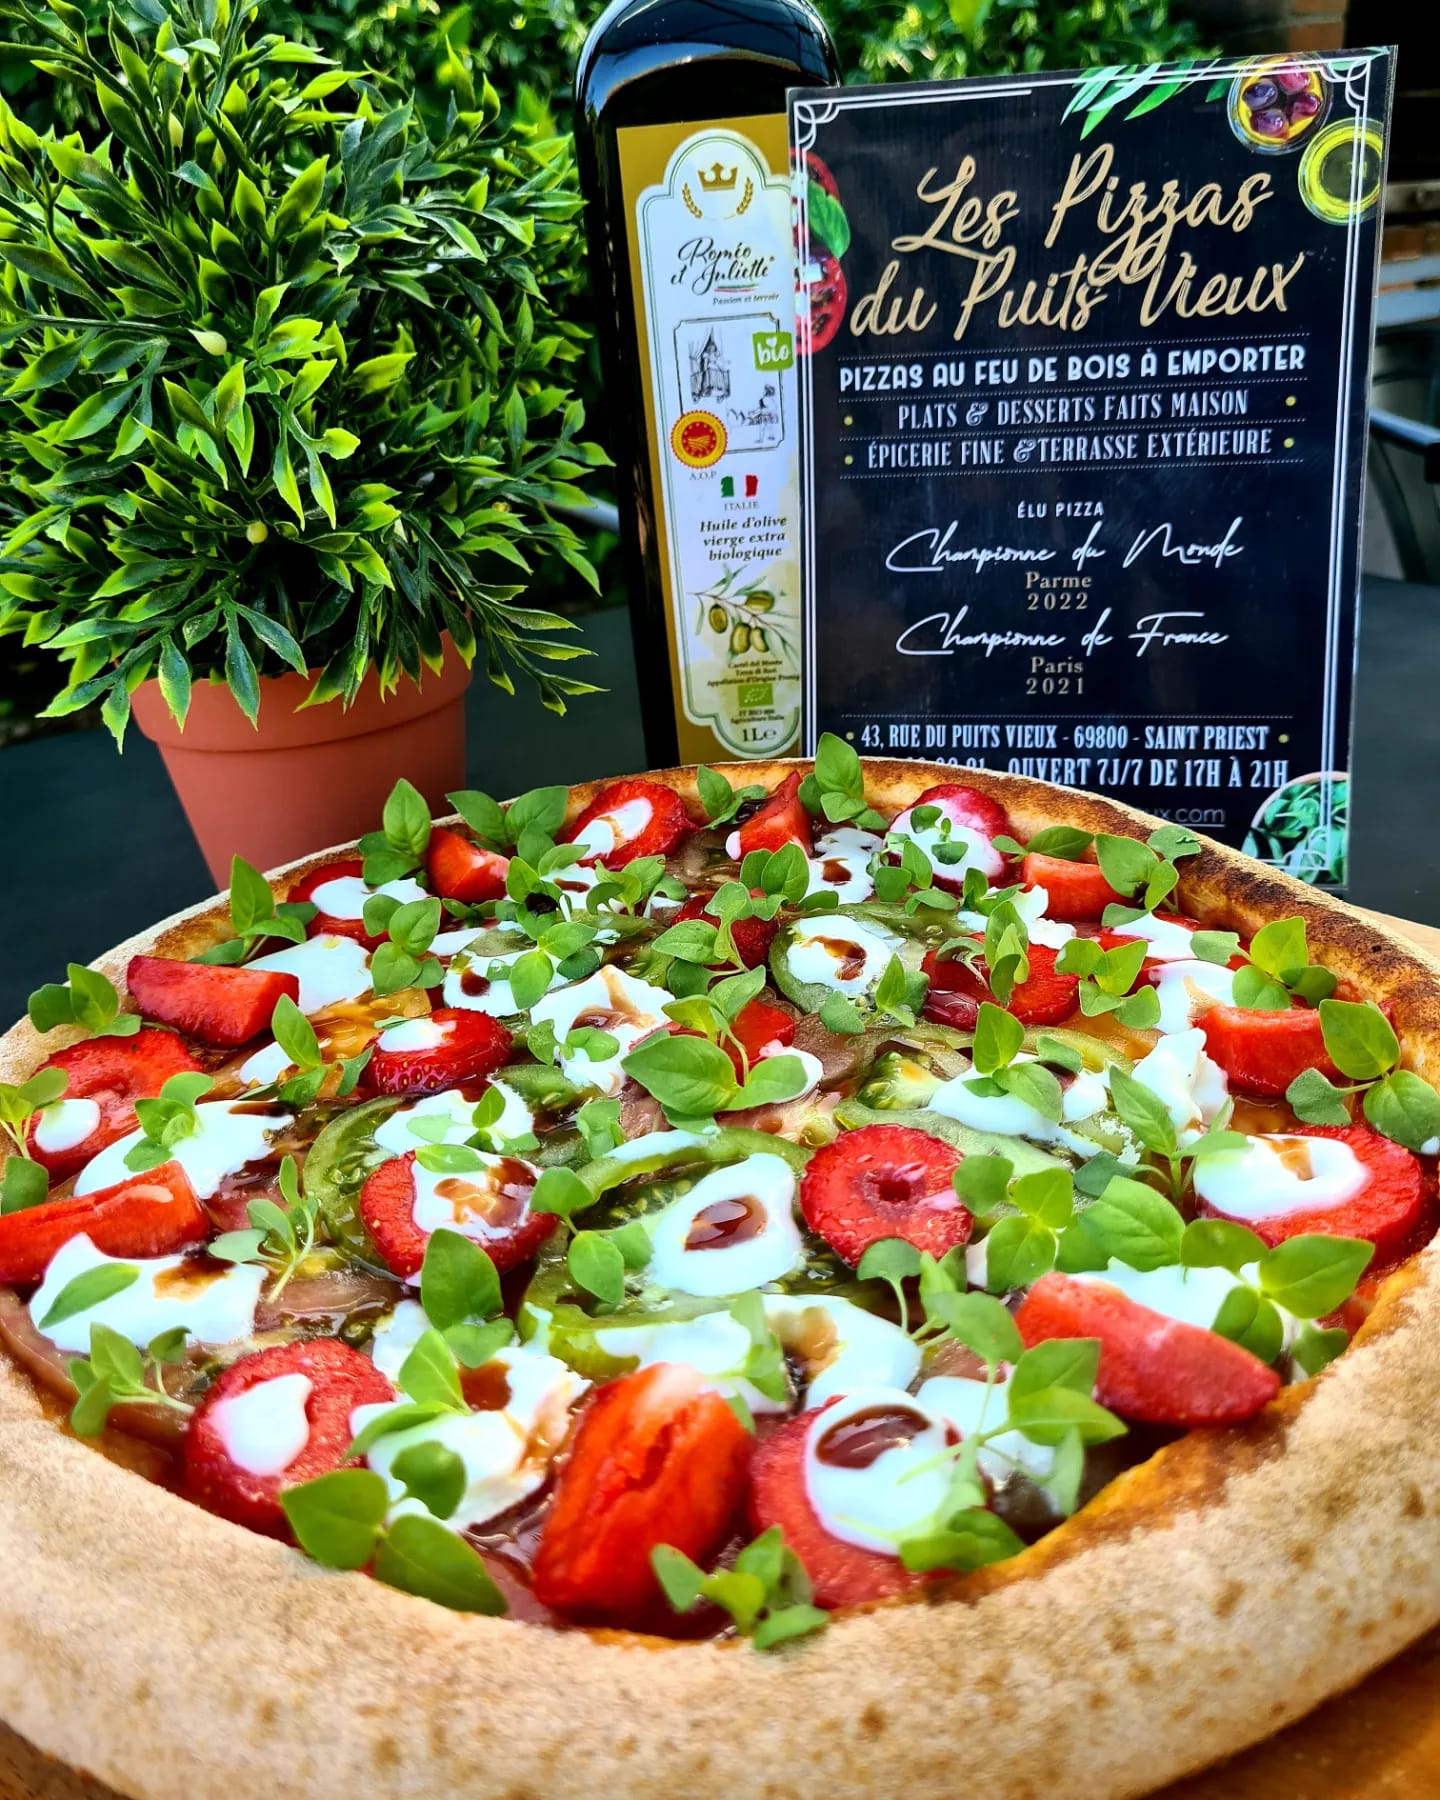 La meilleure pizza du monde à Saint-Priest près de Lyon, avec Les Pizzas du Puits Vieux